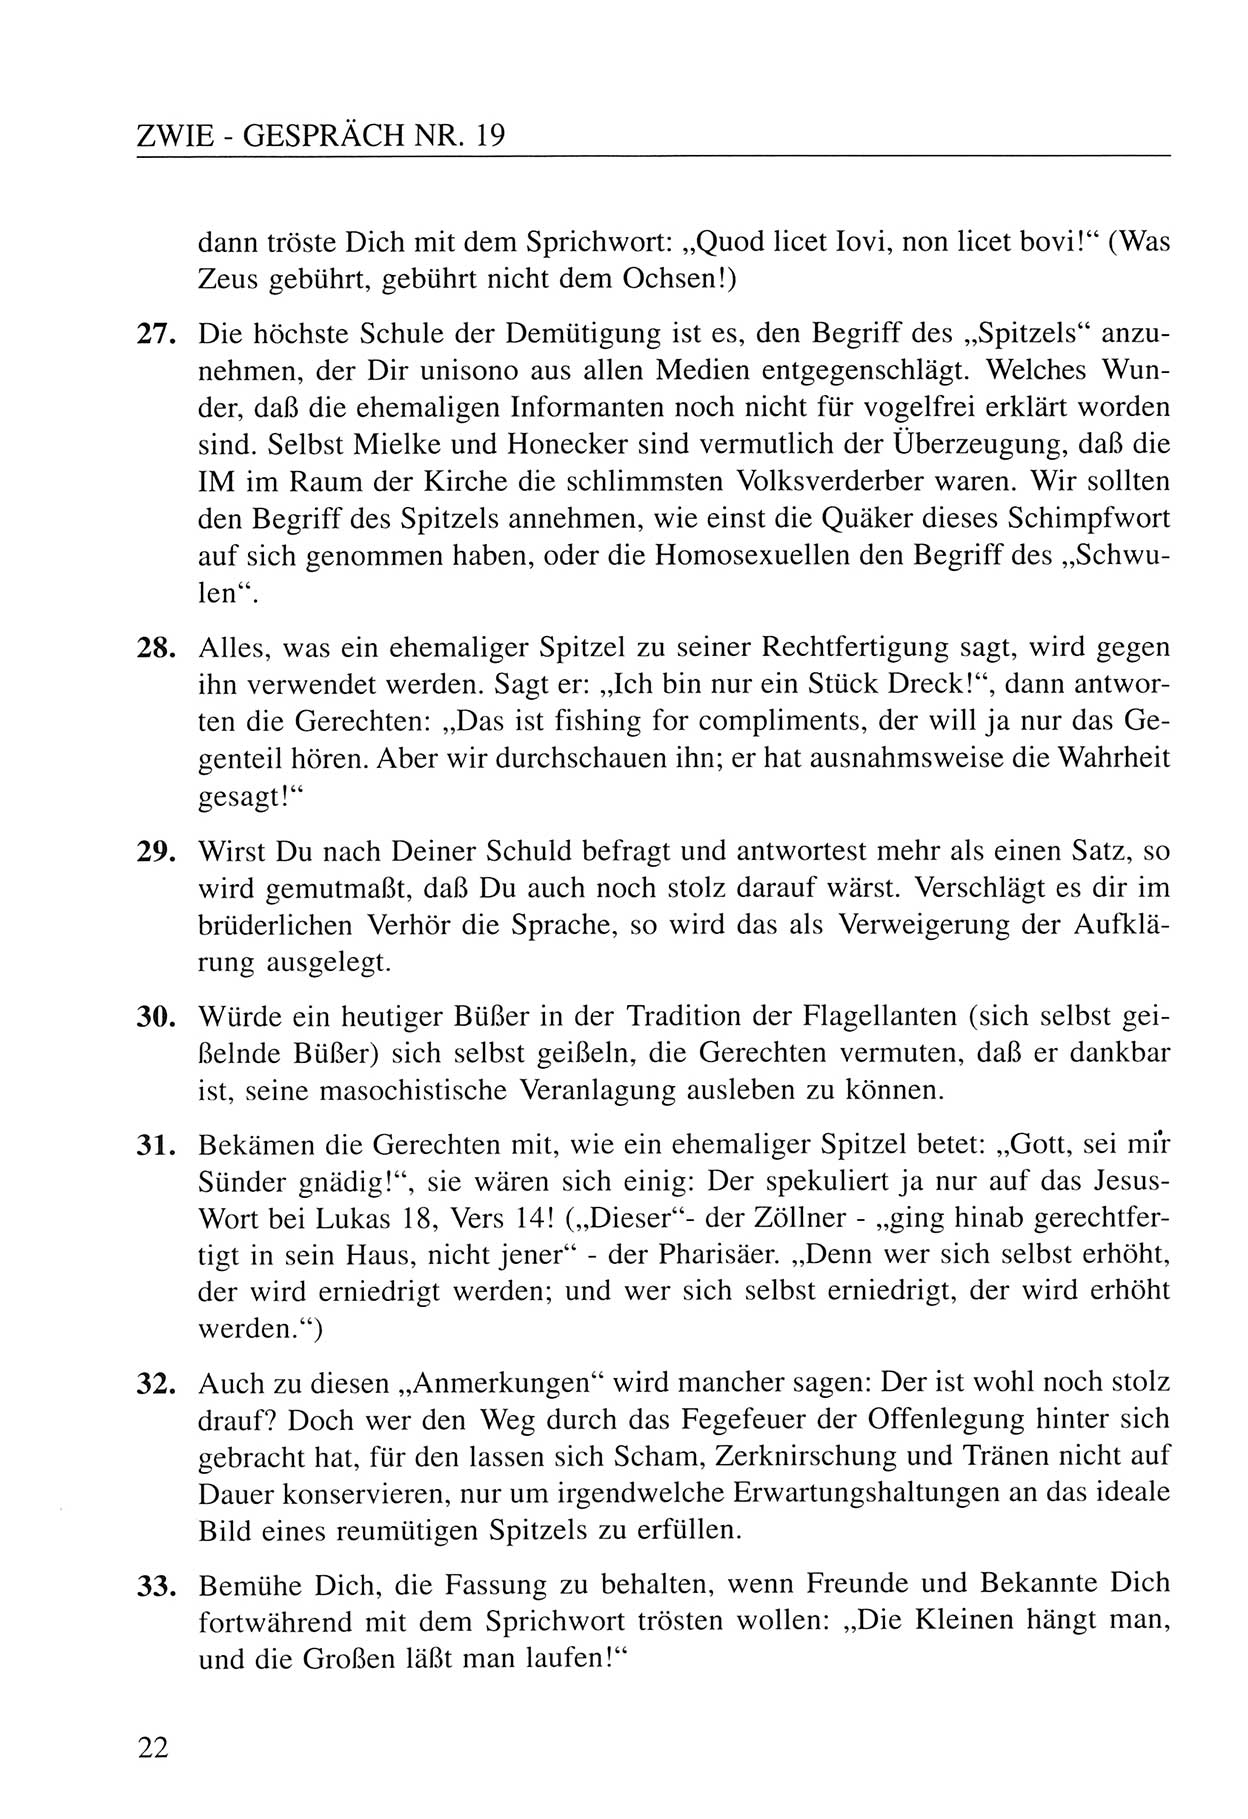 Zwie-Gespräch, Beiträge zum Umgang mit der Staatssicherheits-Vergangenheit [Deutsche Demokratische Republik (DDR)], Ausgabe Nr. 19, Berlin 1994, Seite 22 (Zwie-Gespr. Ausg. 19 1994, S. 22)